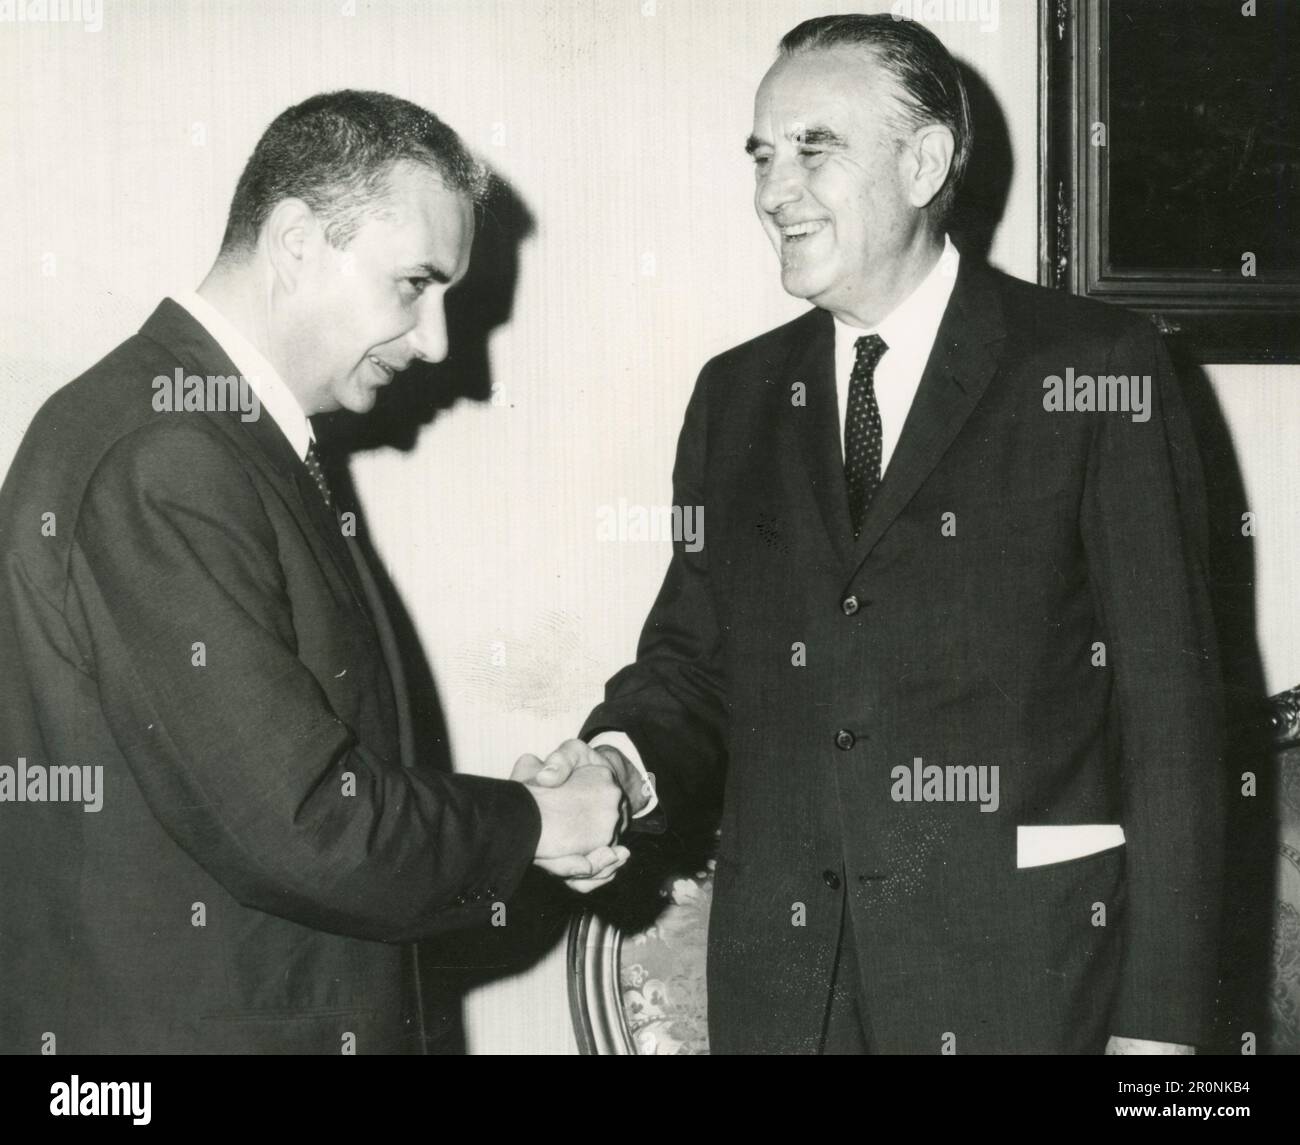 Il PM italiano Aldo moro incontra un politico straniero, Italia 1965 Foto Stock